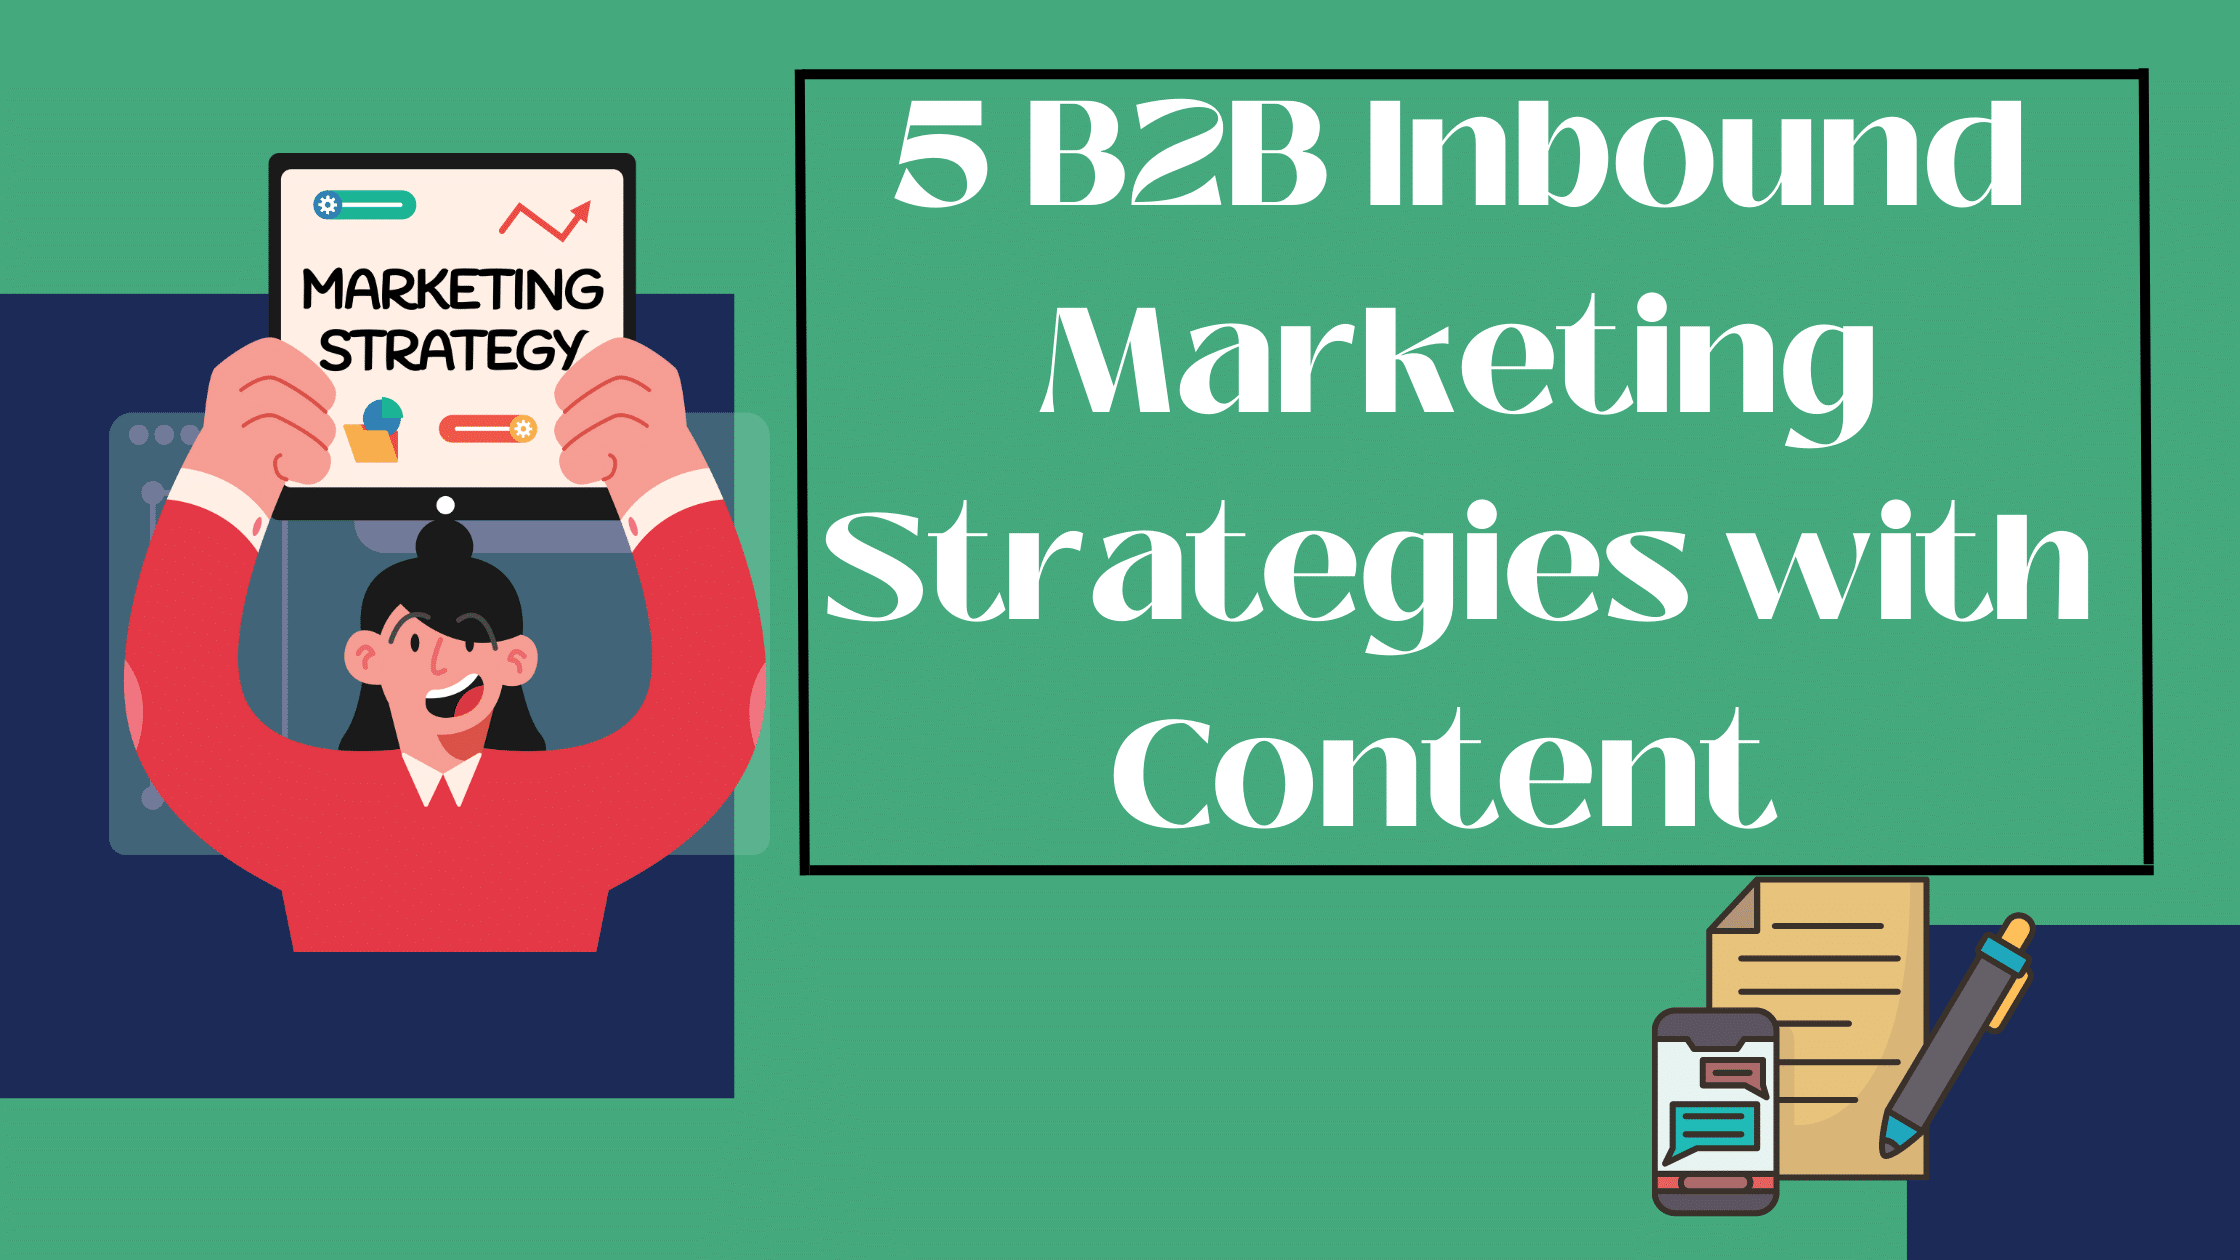 Inbound Marketing Strategies with Content